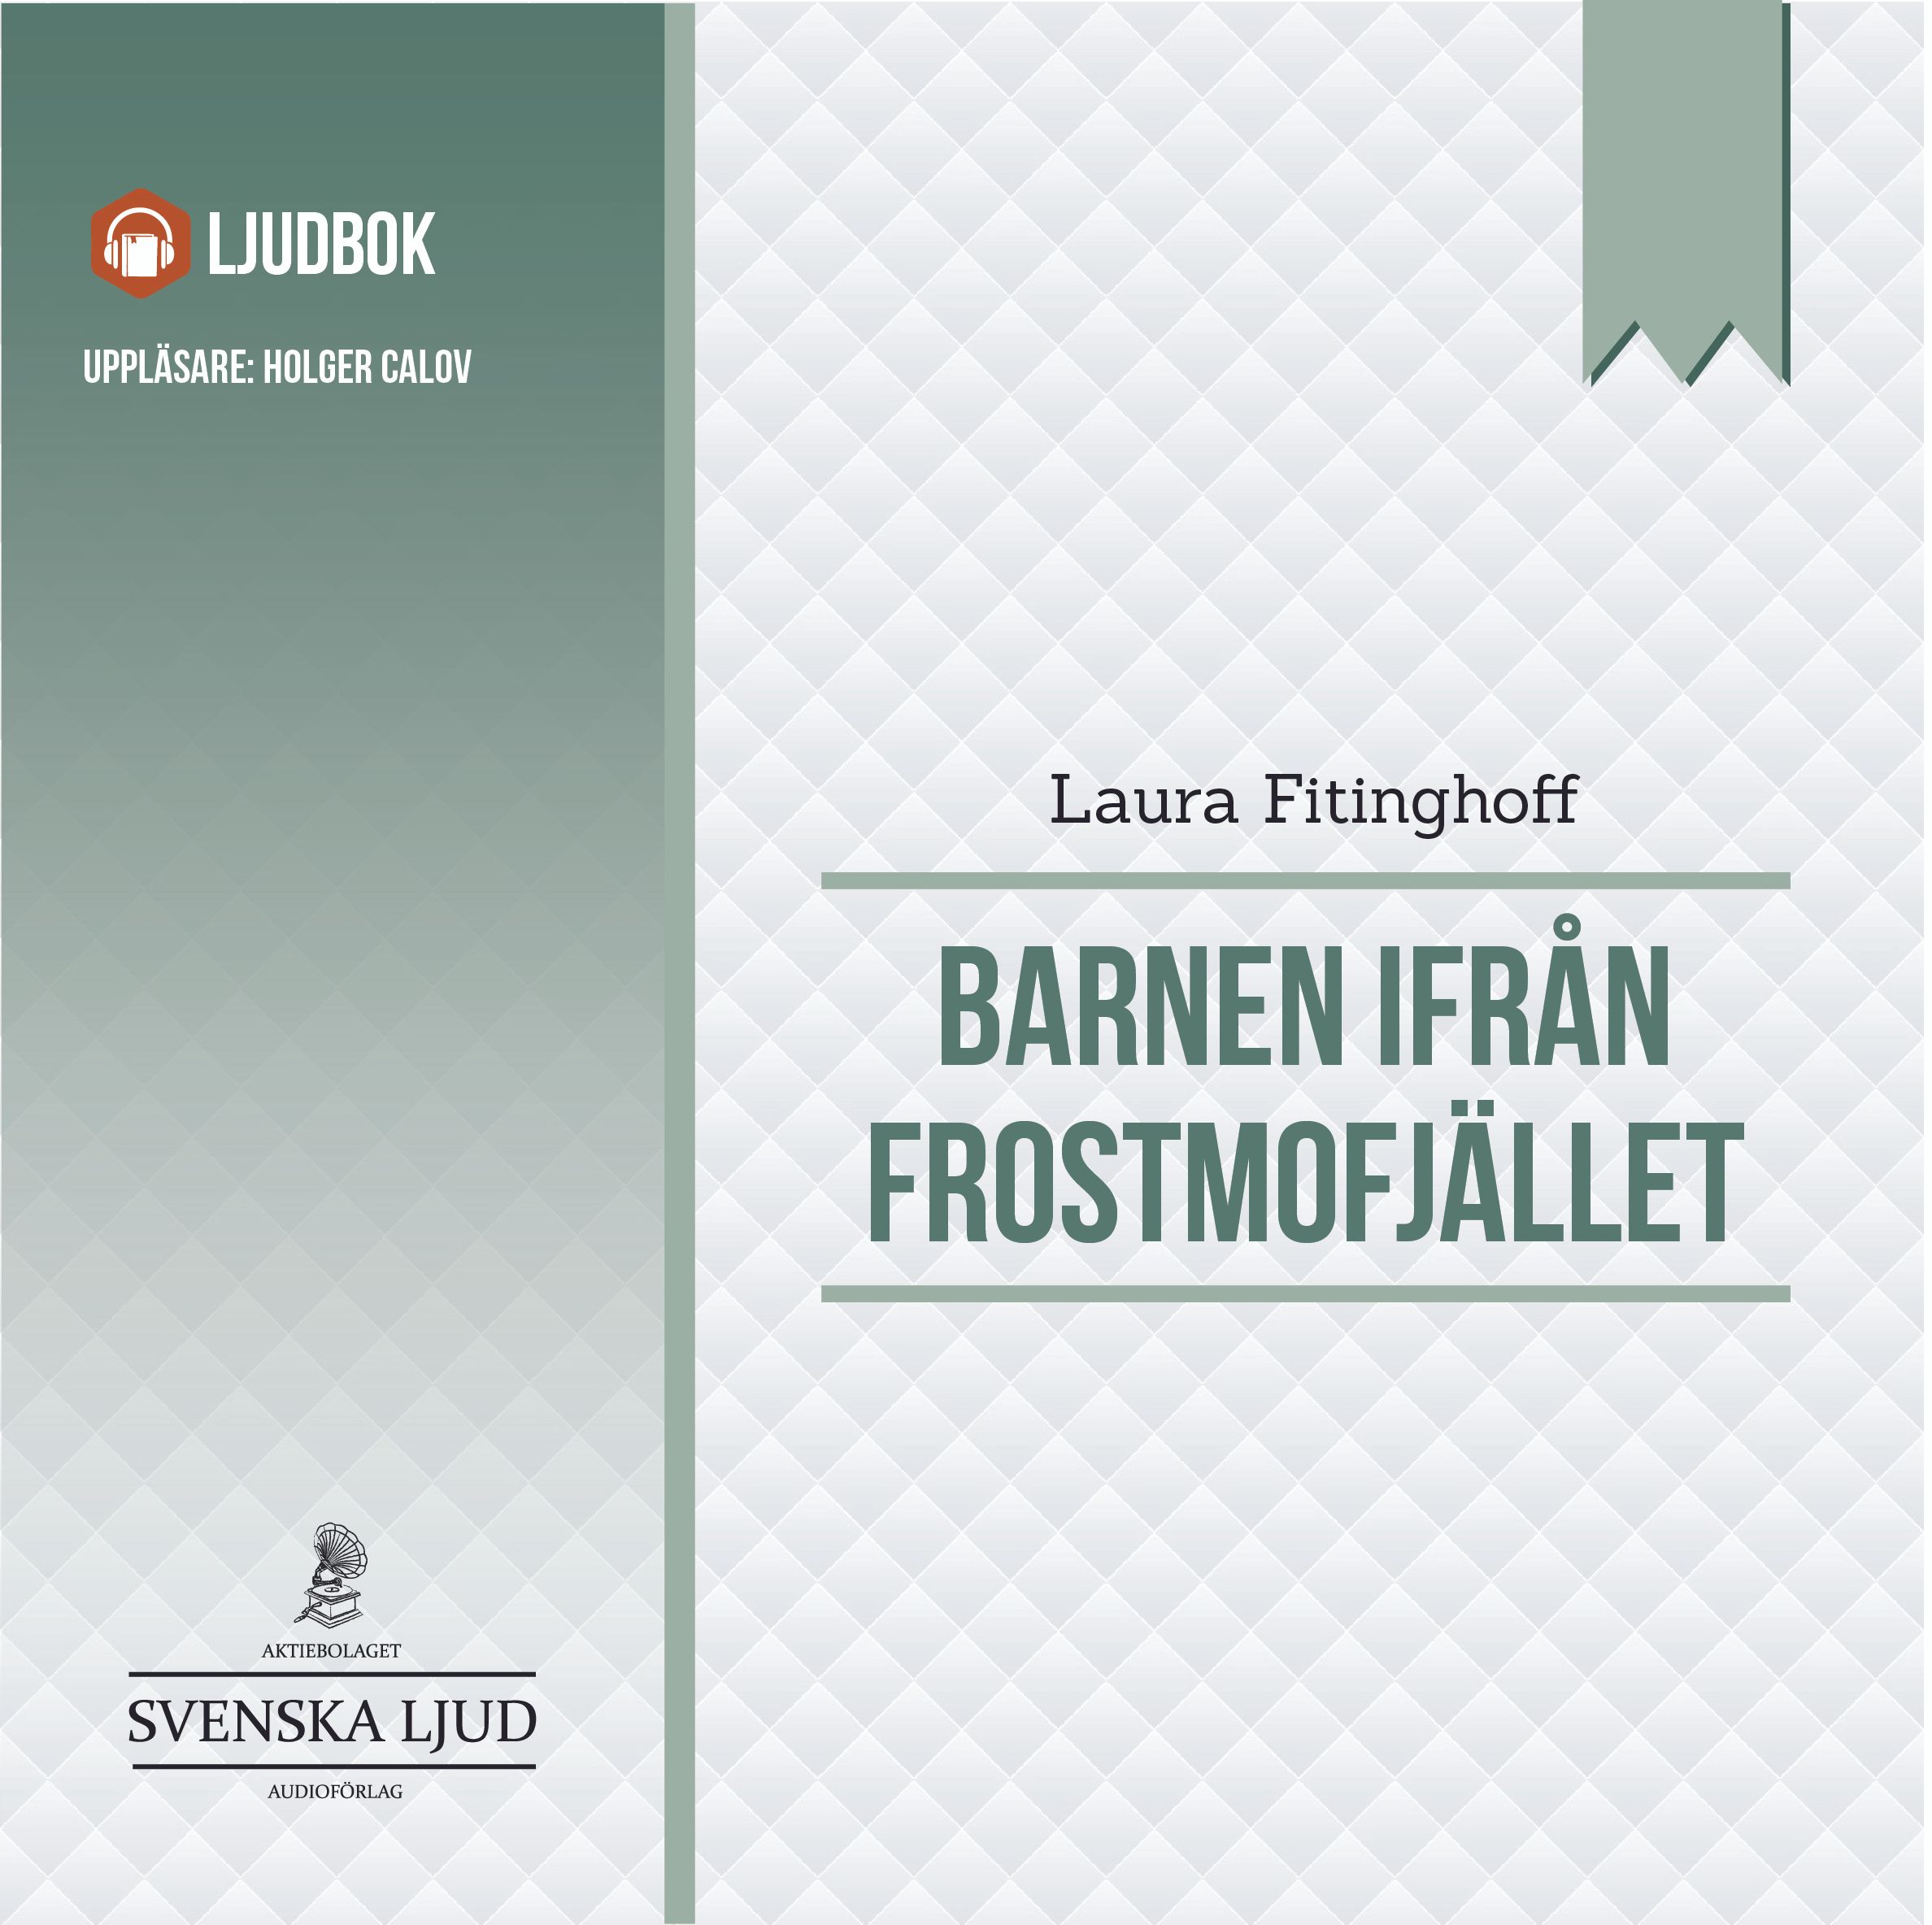 Barnen från Frostmofjället, audiobook by Laura Fitinghoff